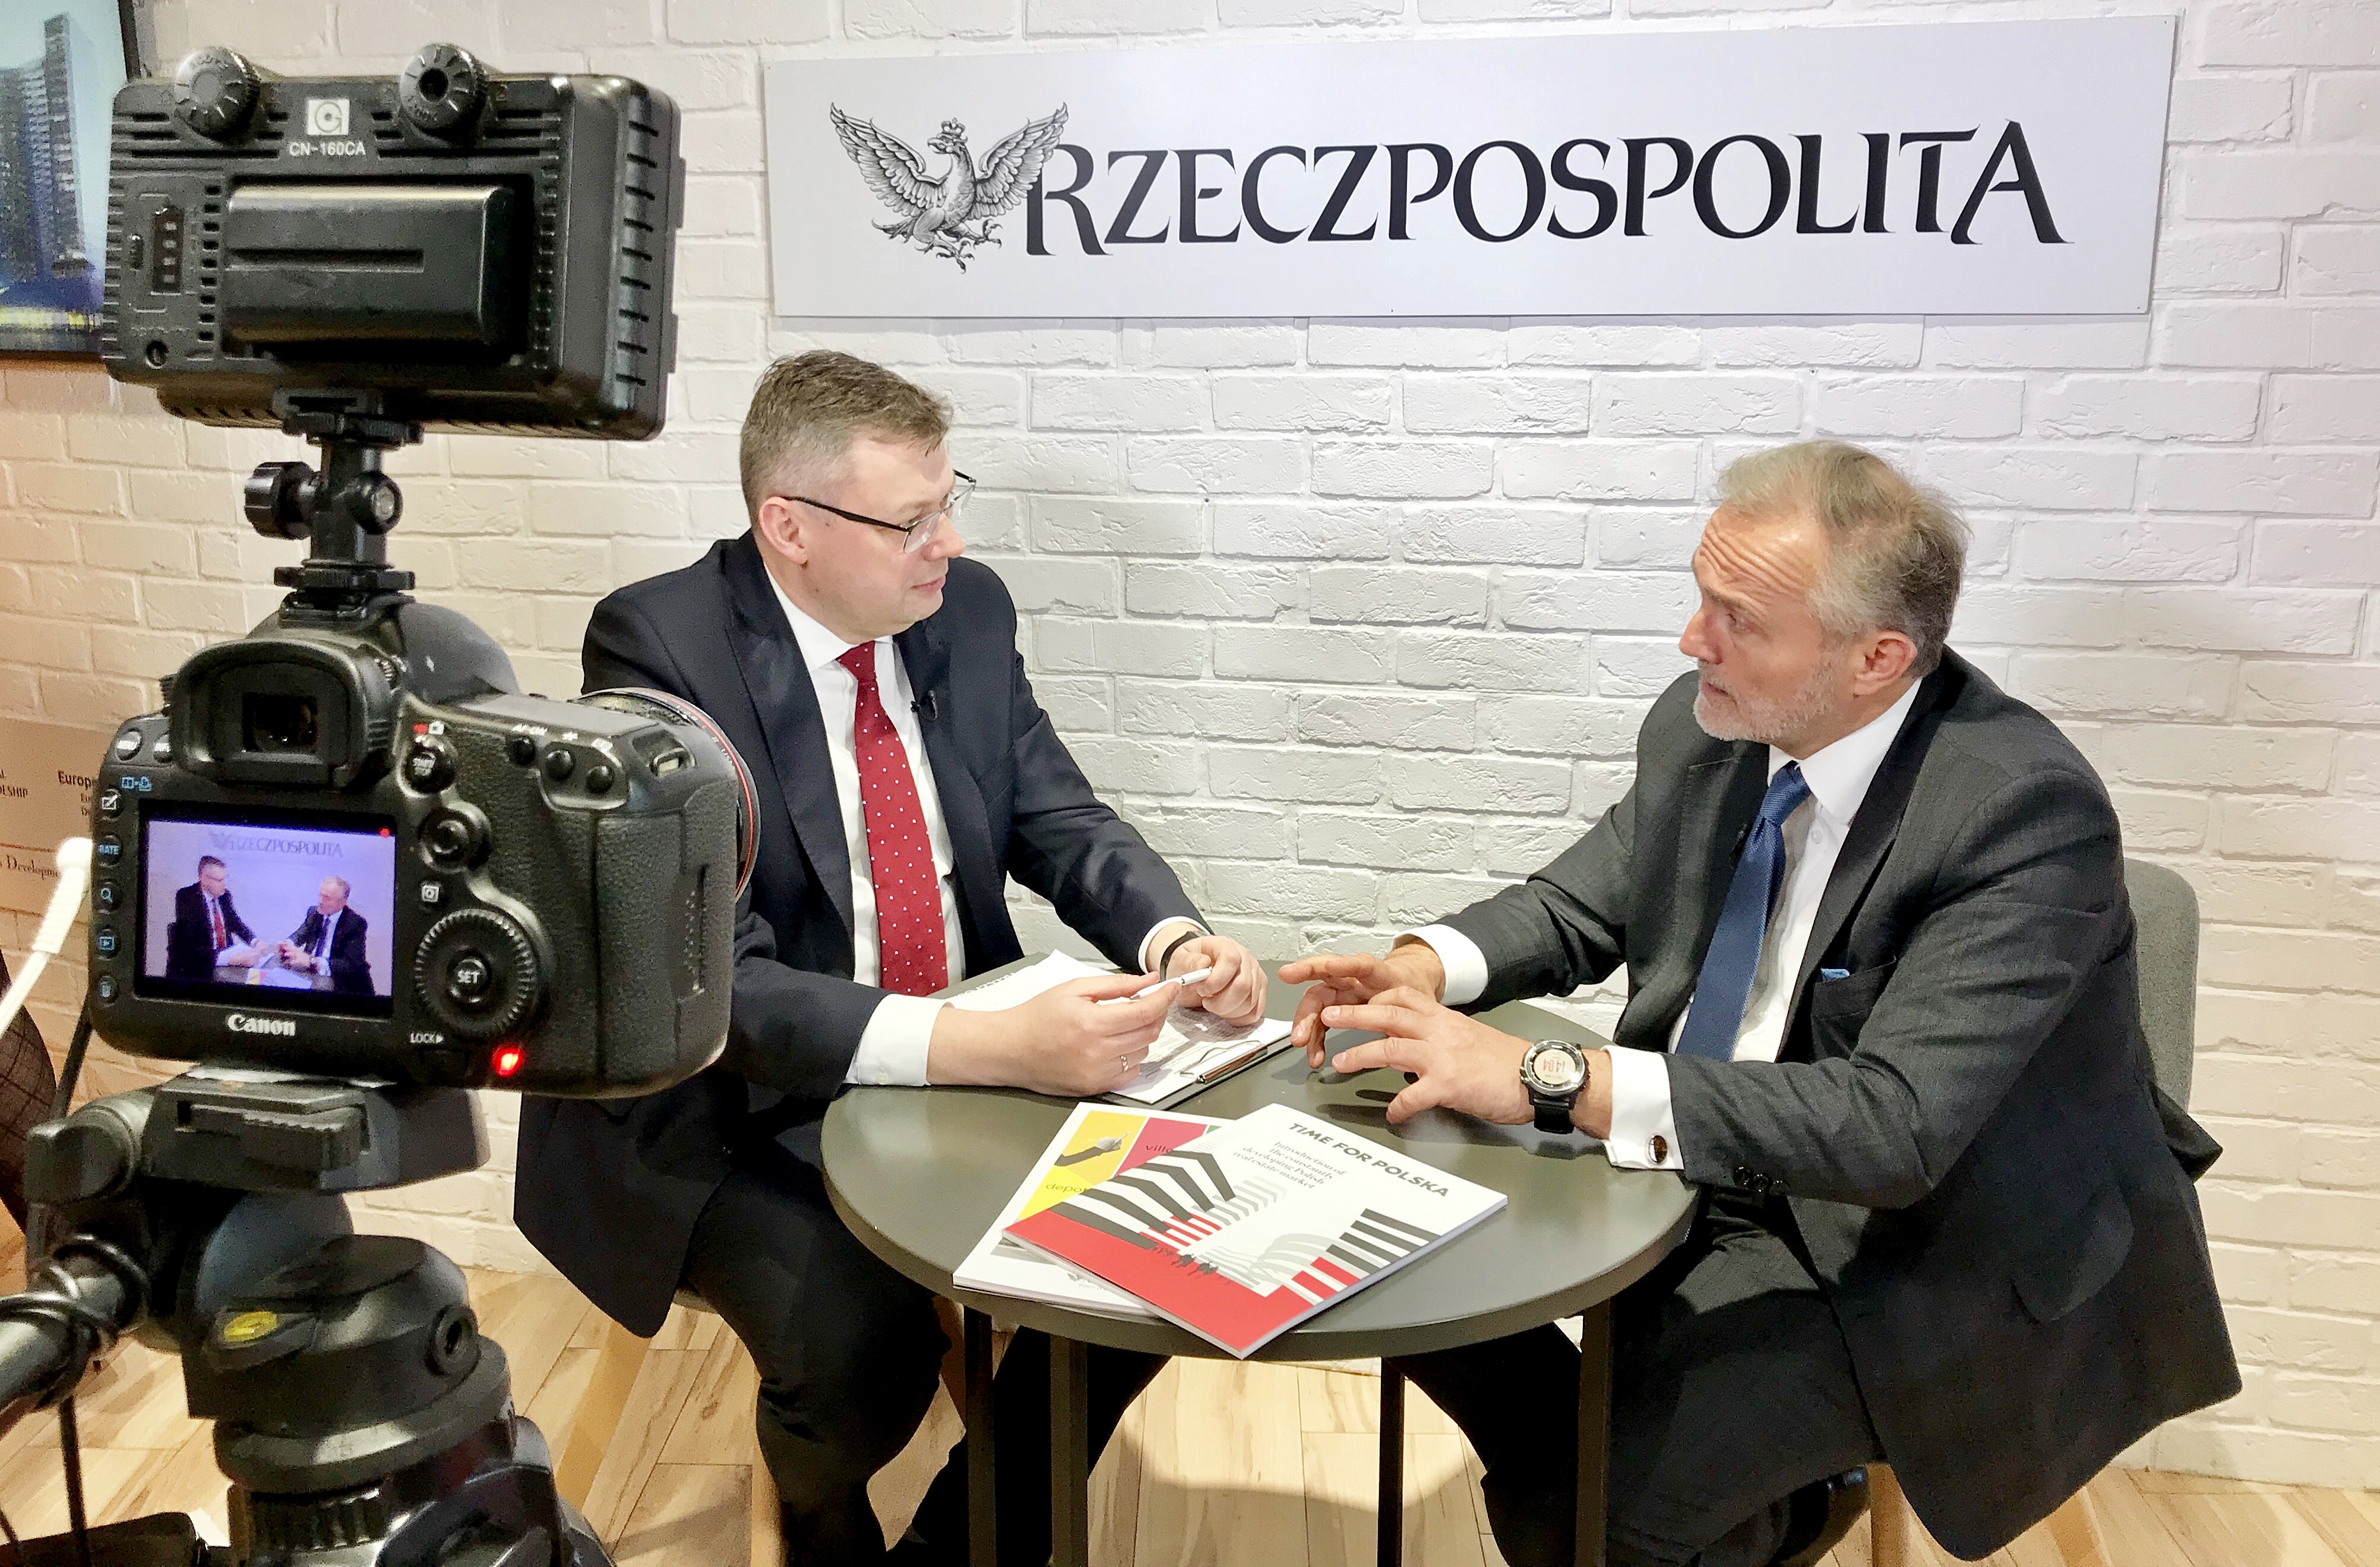 Prezydent Gdyni, Wojciech Szczurek w rozmowie z Marcinem Piaseckim z "Rzeczpospolitej" w Cannes, fot. Maja Studzińska